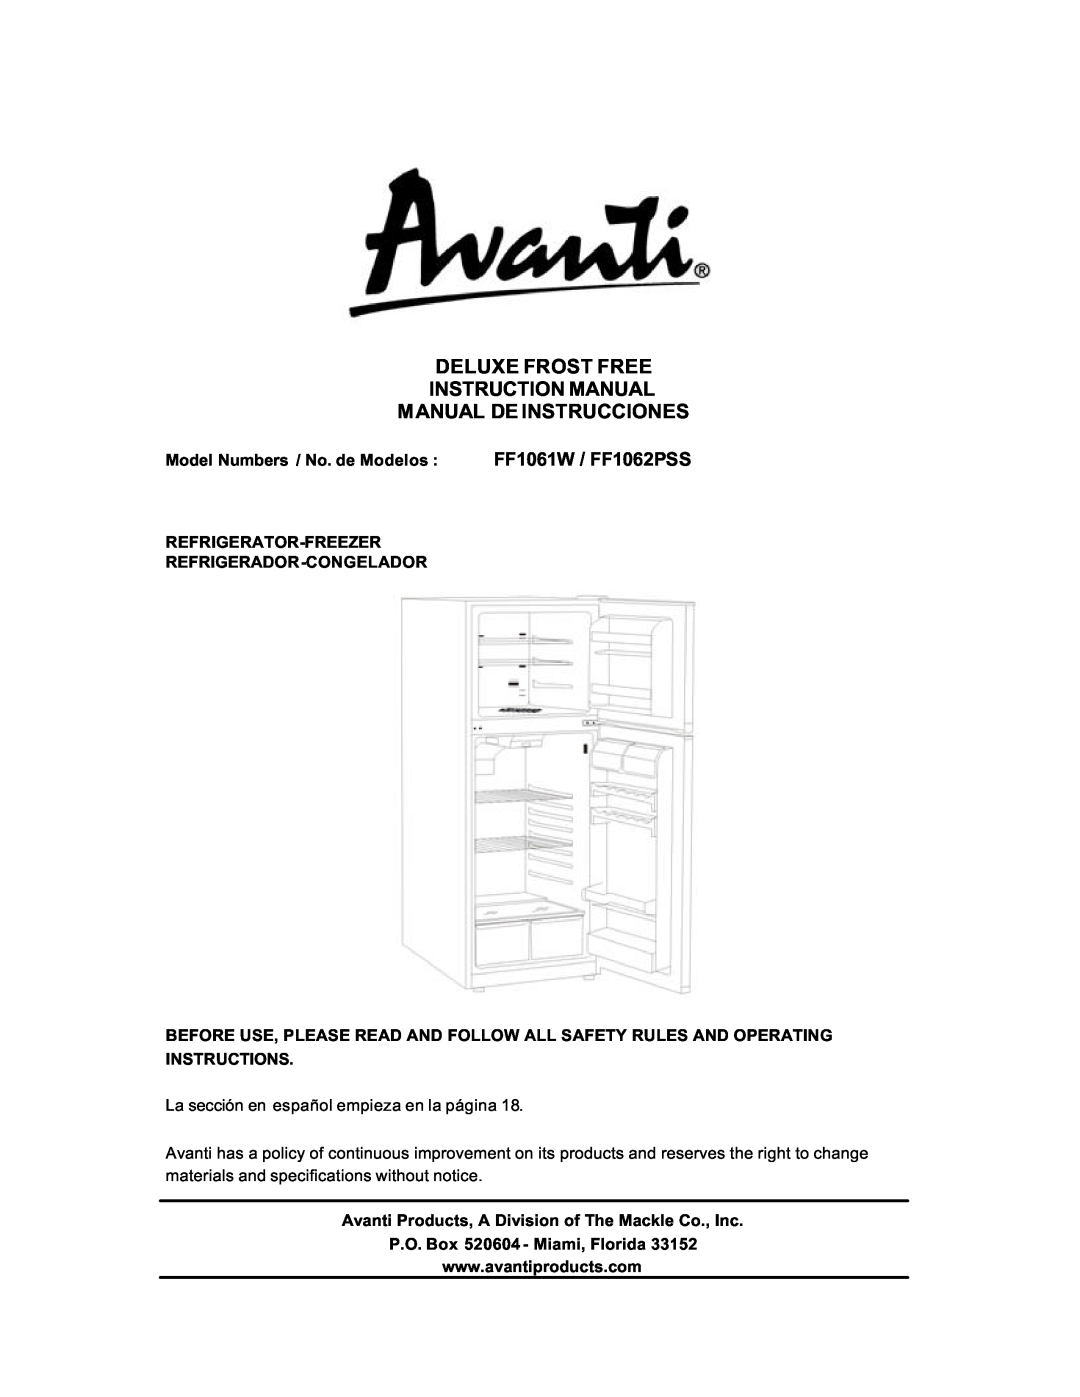 Avanti instruction manual Manual De Instrucciones, FF1061W / FF1062PSS, Model Numbers / No. de Modelos, Instructions 